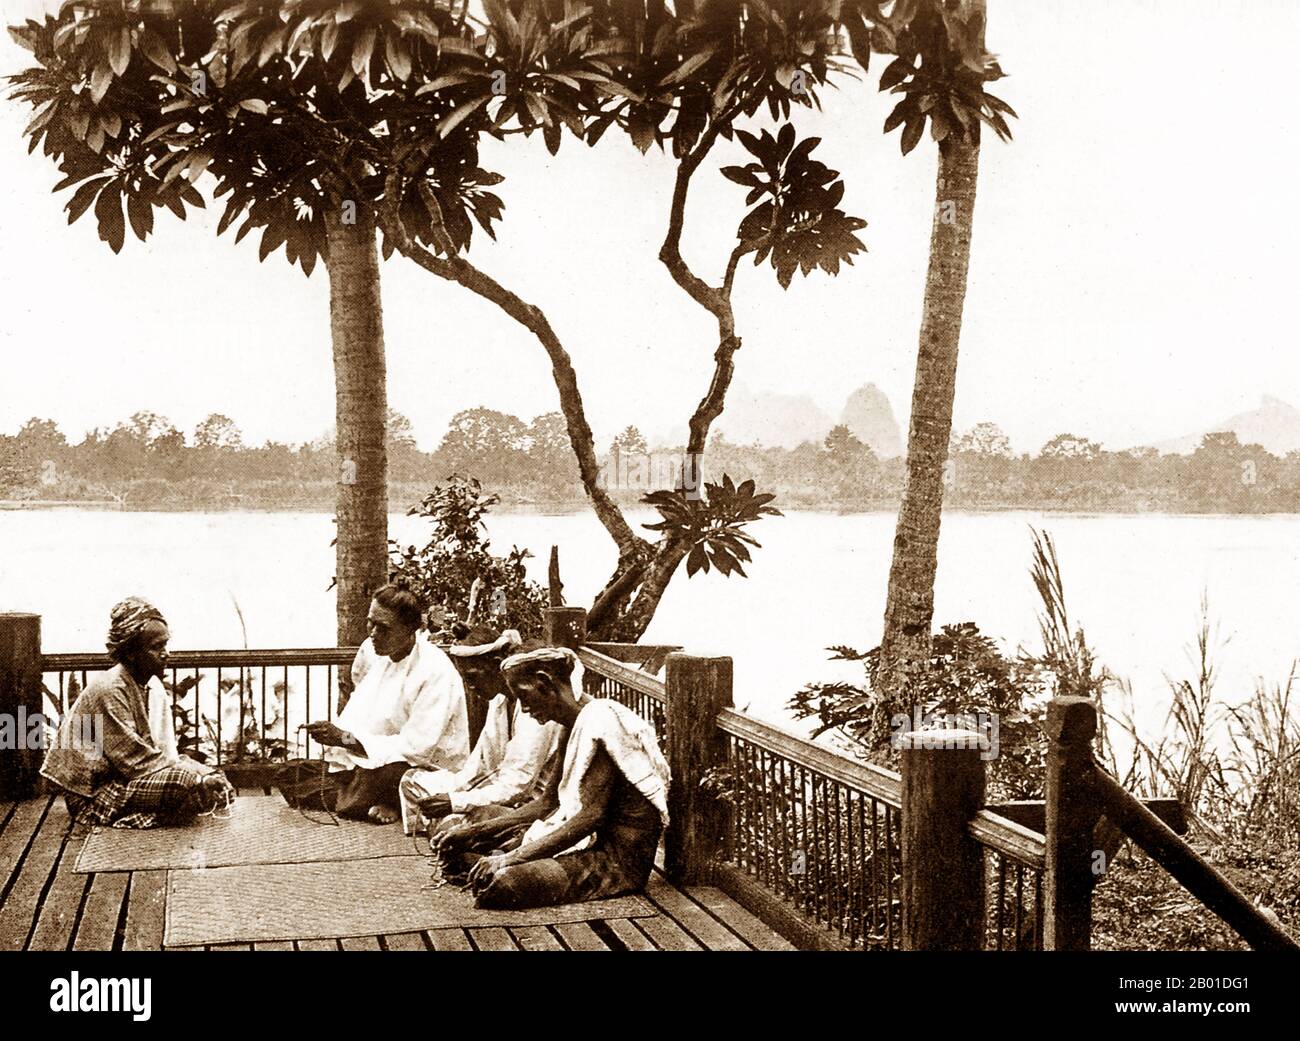 Birma: Dorfälteste diskutieren lokale Angelegenheiten, c. 1892-1896. Die britische Eroberung Birmas begann 1824 als Reaktion auf einen birmanischen Versuch, Indien zu erobern. 1886 und nach zwei weiteren Kriegen hatte Großbritannien das ganze Land in den britischen Raj aufgenommen. Um den Handel anzukurbeln und Veränderungen zu erleichtern, brachten die Briten Inder und Chinesen ein, die die Burmesen schnell in städtische Gebiete vertrieben. Bis heute haben Rangoon und Mandalay große ethnische Indianer. Eisenbahnen und Schulen wurden gebaut, ebenso wie zahlreiche Gefängnisse, darunter das berüchtigte Insein-Gefängnis. Stockfoto